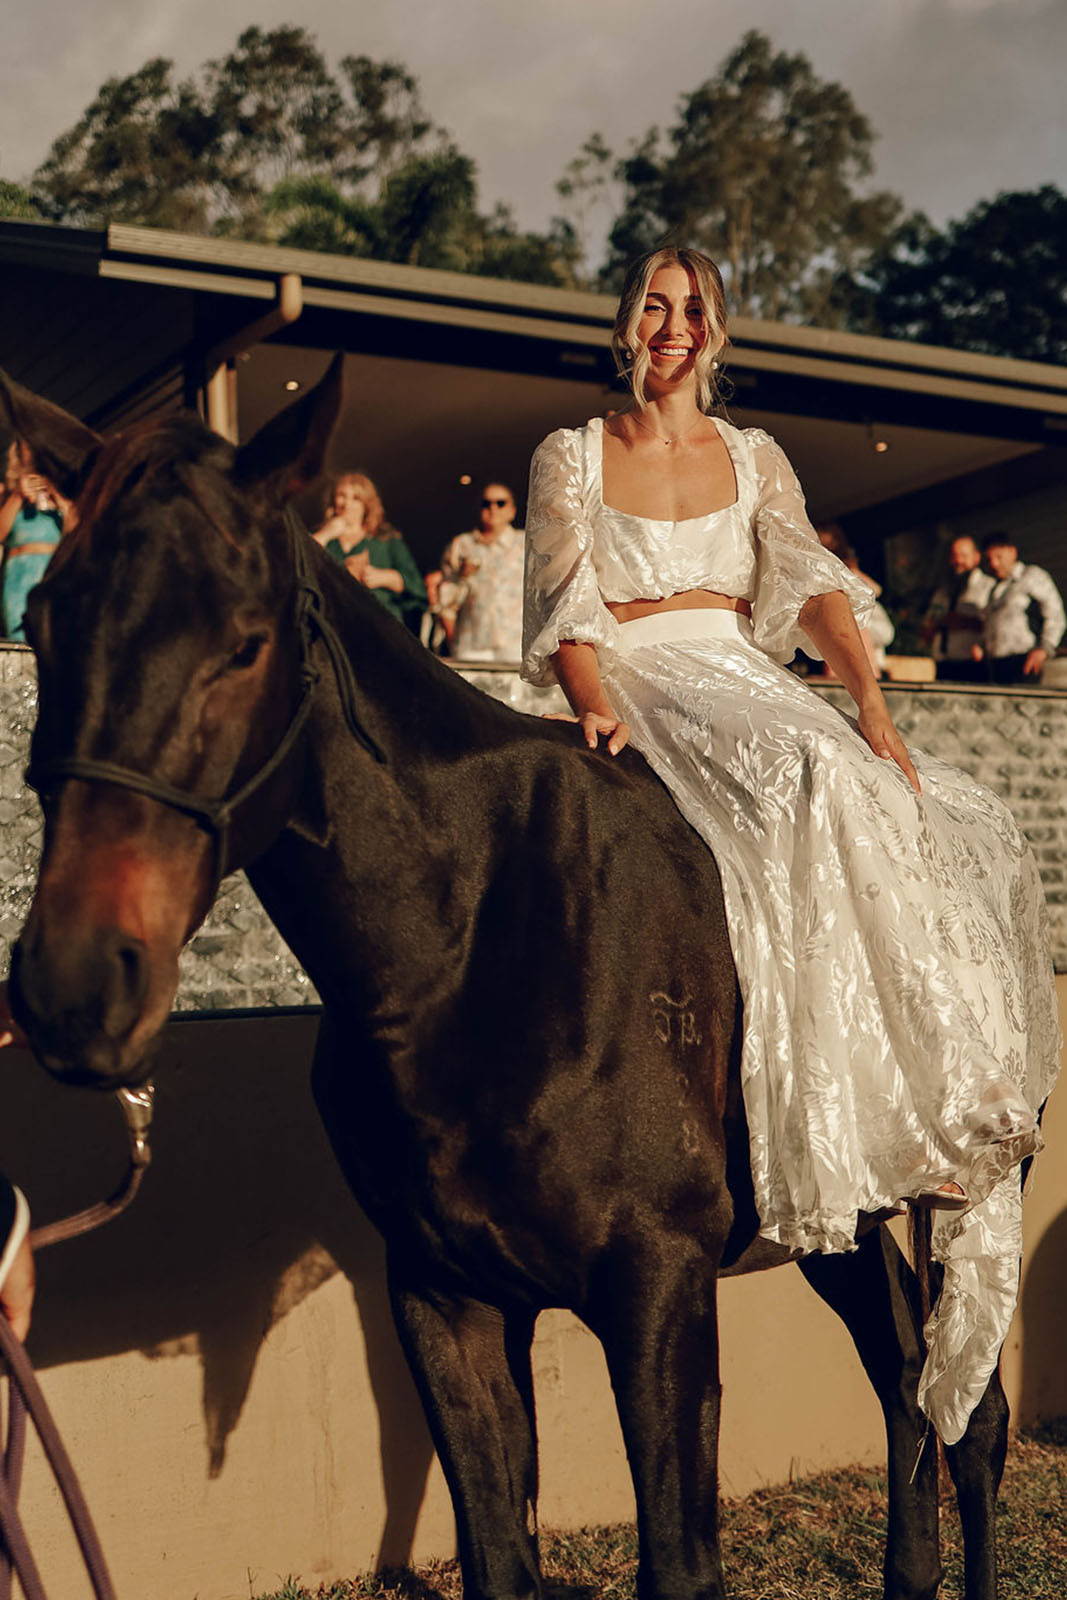 Bride on horse at farm wedding